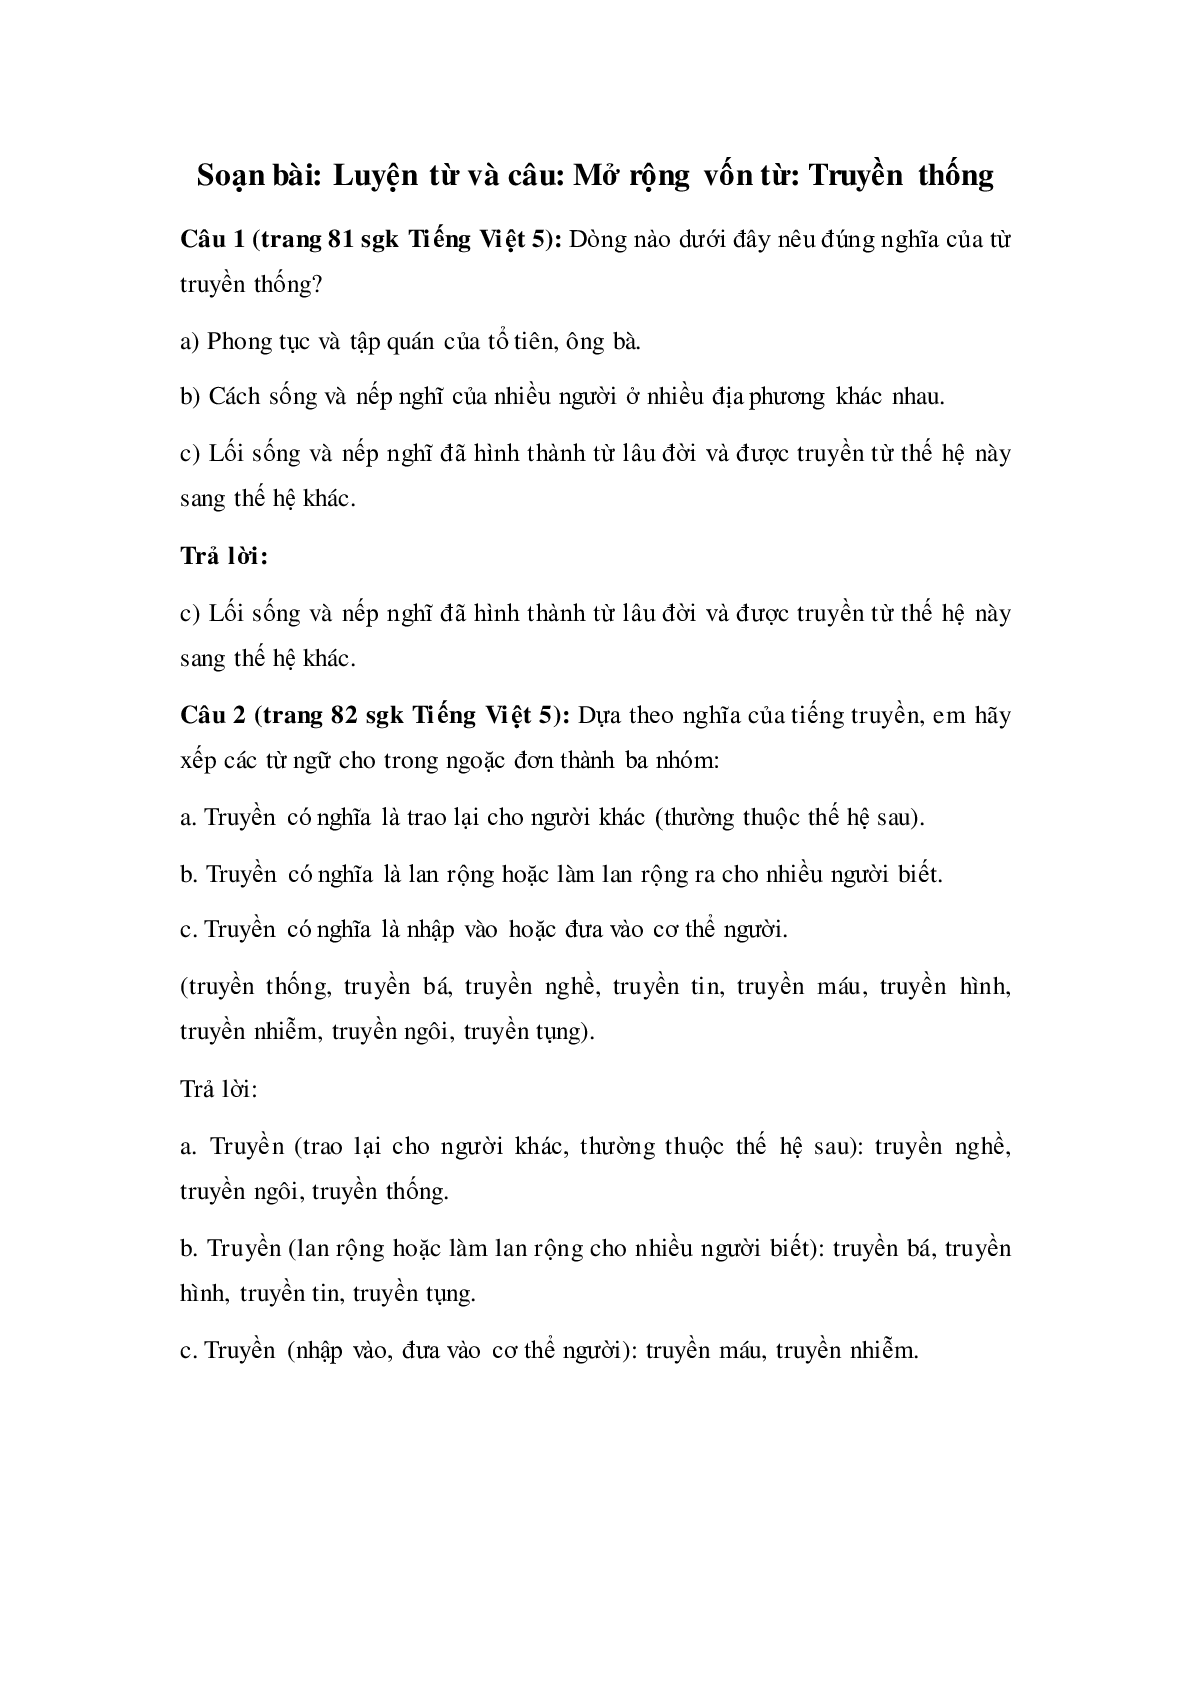 Soạn Tiếng Việt lớp 5: Luyện từ và câu: Mở rộng vốn từ: Truyền thống mới nhất (trang 1)